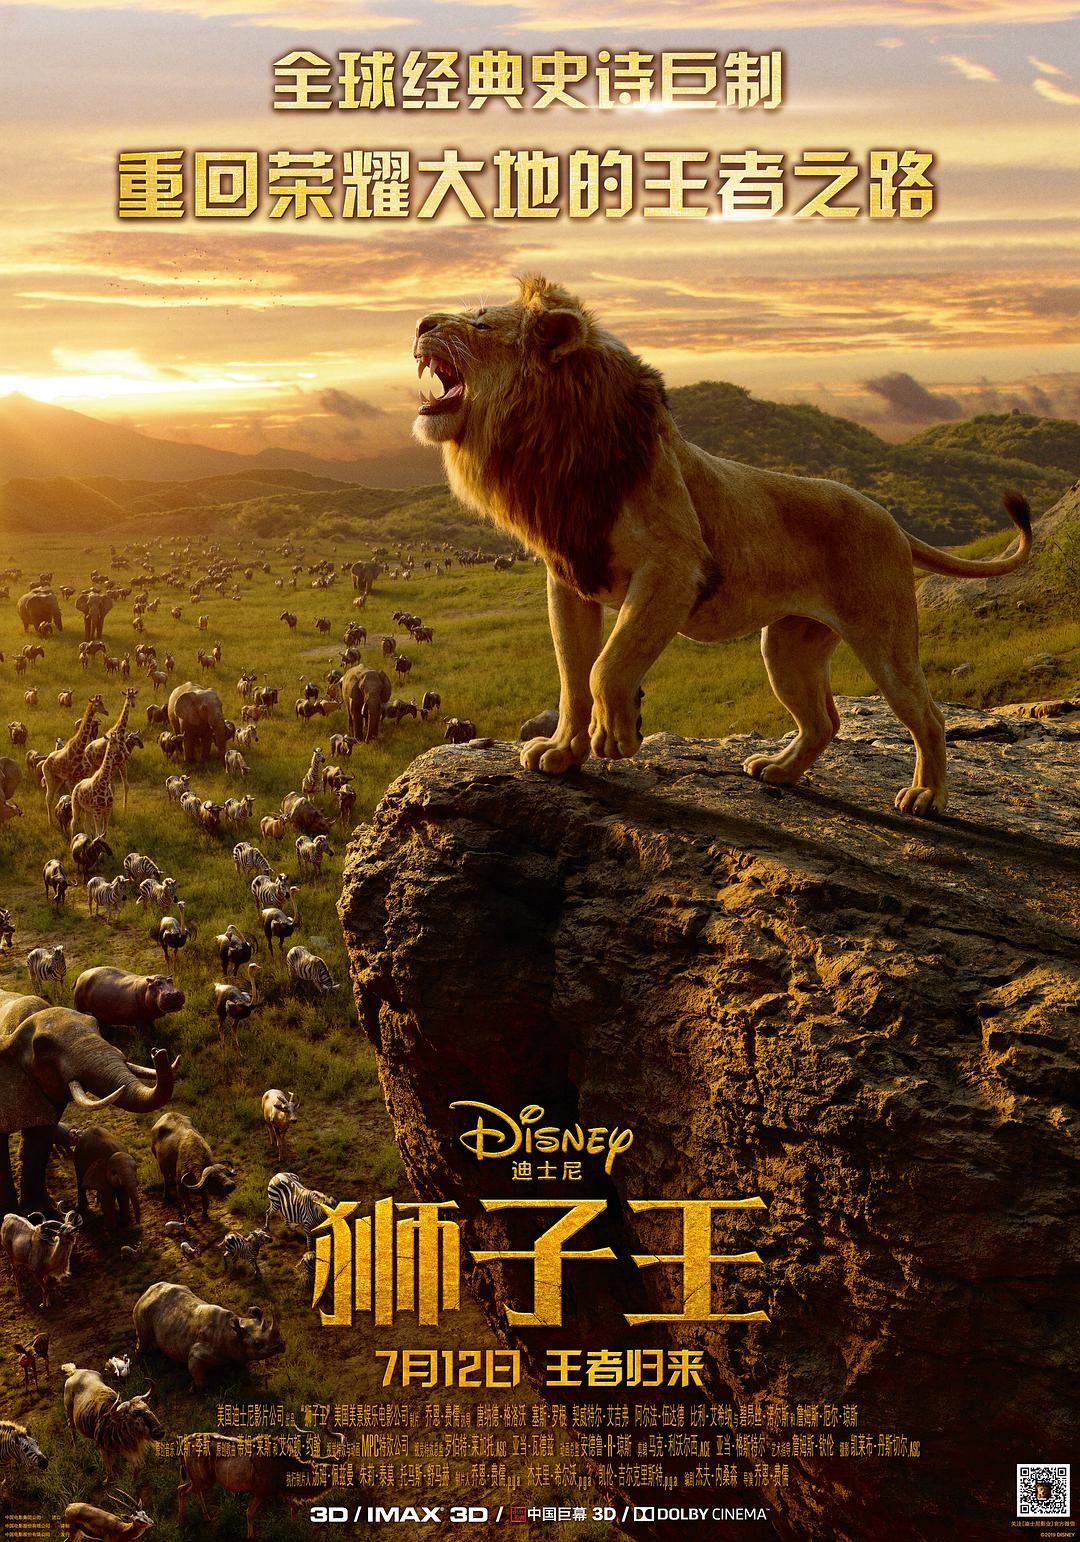 狮子王/狮子王真人版 The.Lion.King.2019.2160p.BluRay.HEVC.TrueHD.7.1.Atmos-BHD 58.62GB-1.png